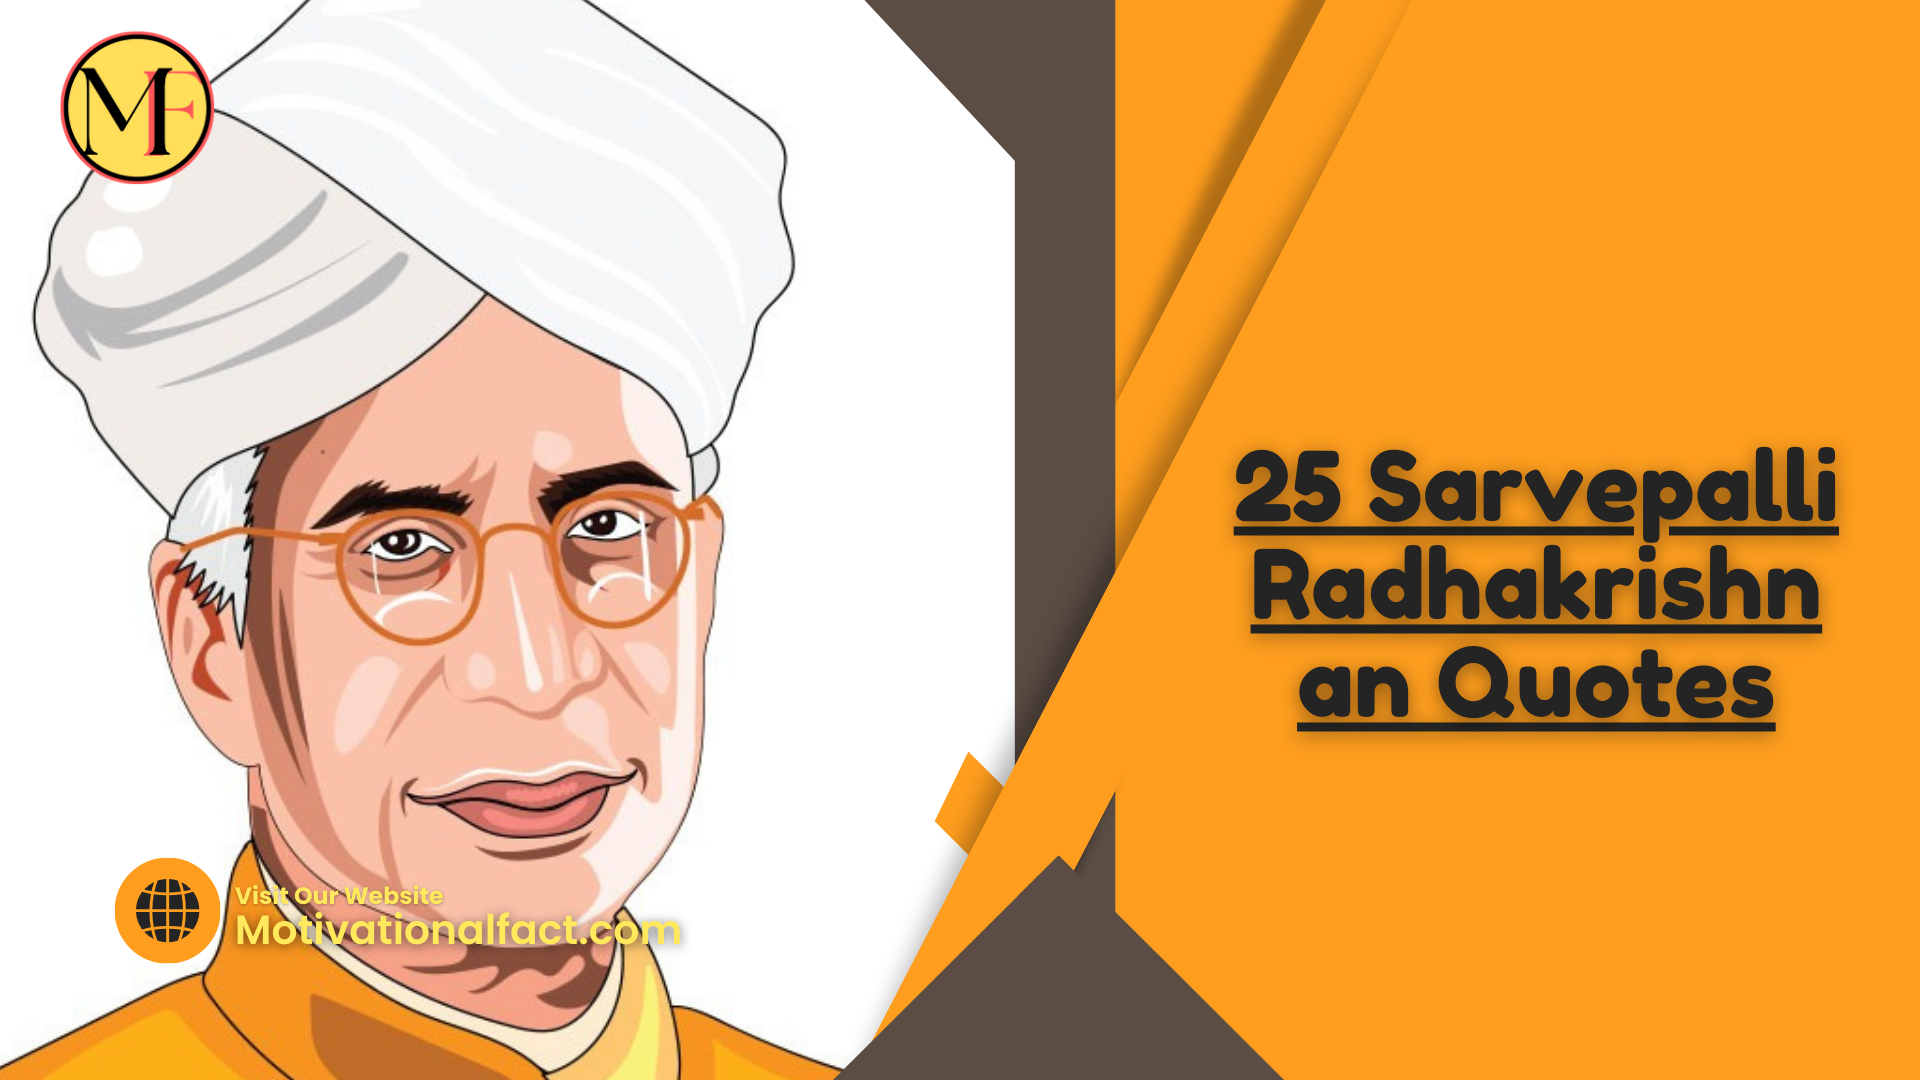 25 Sarvepalli Radhakrishnan Quotes